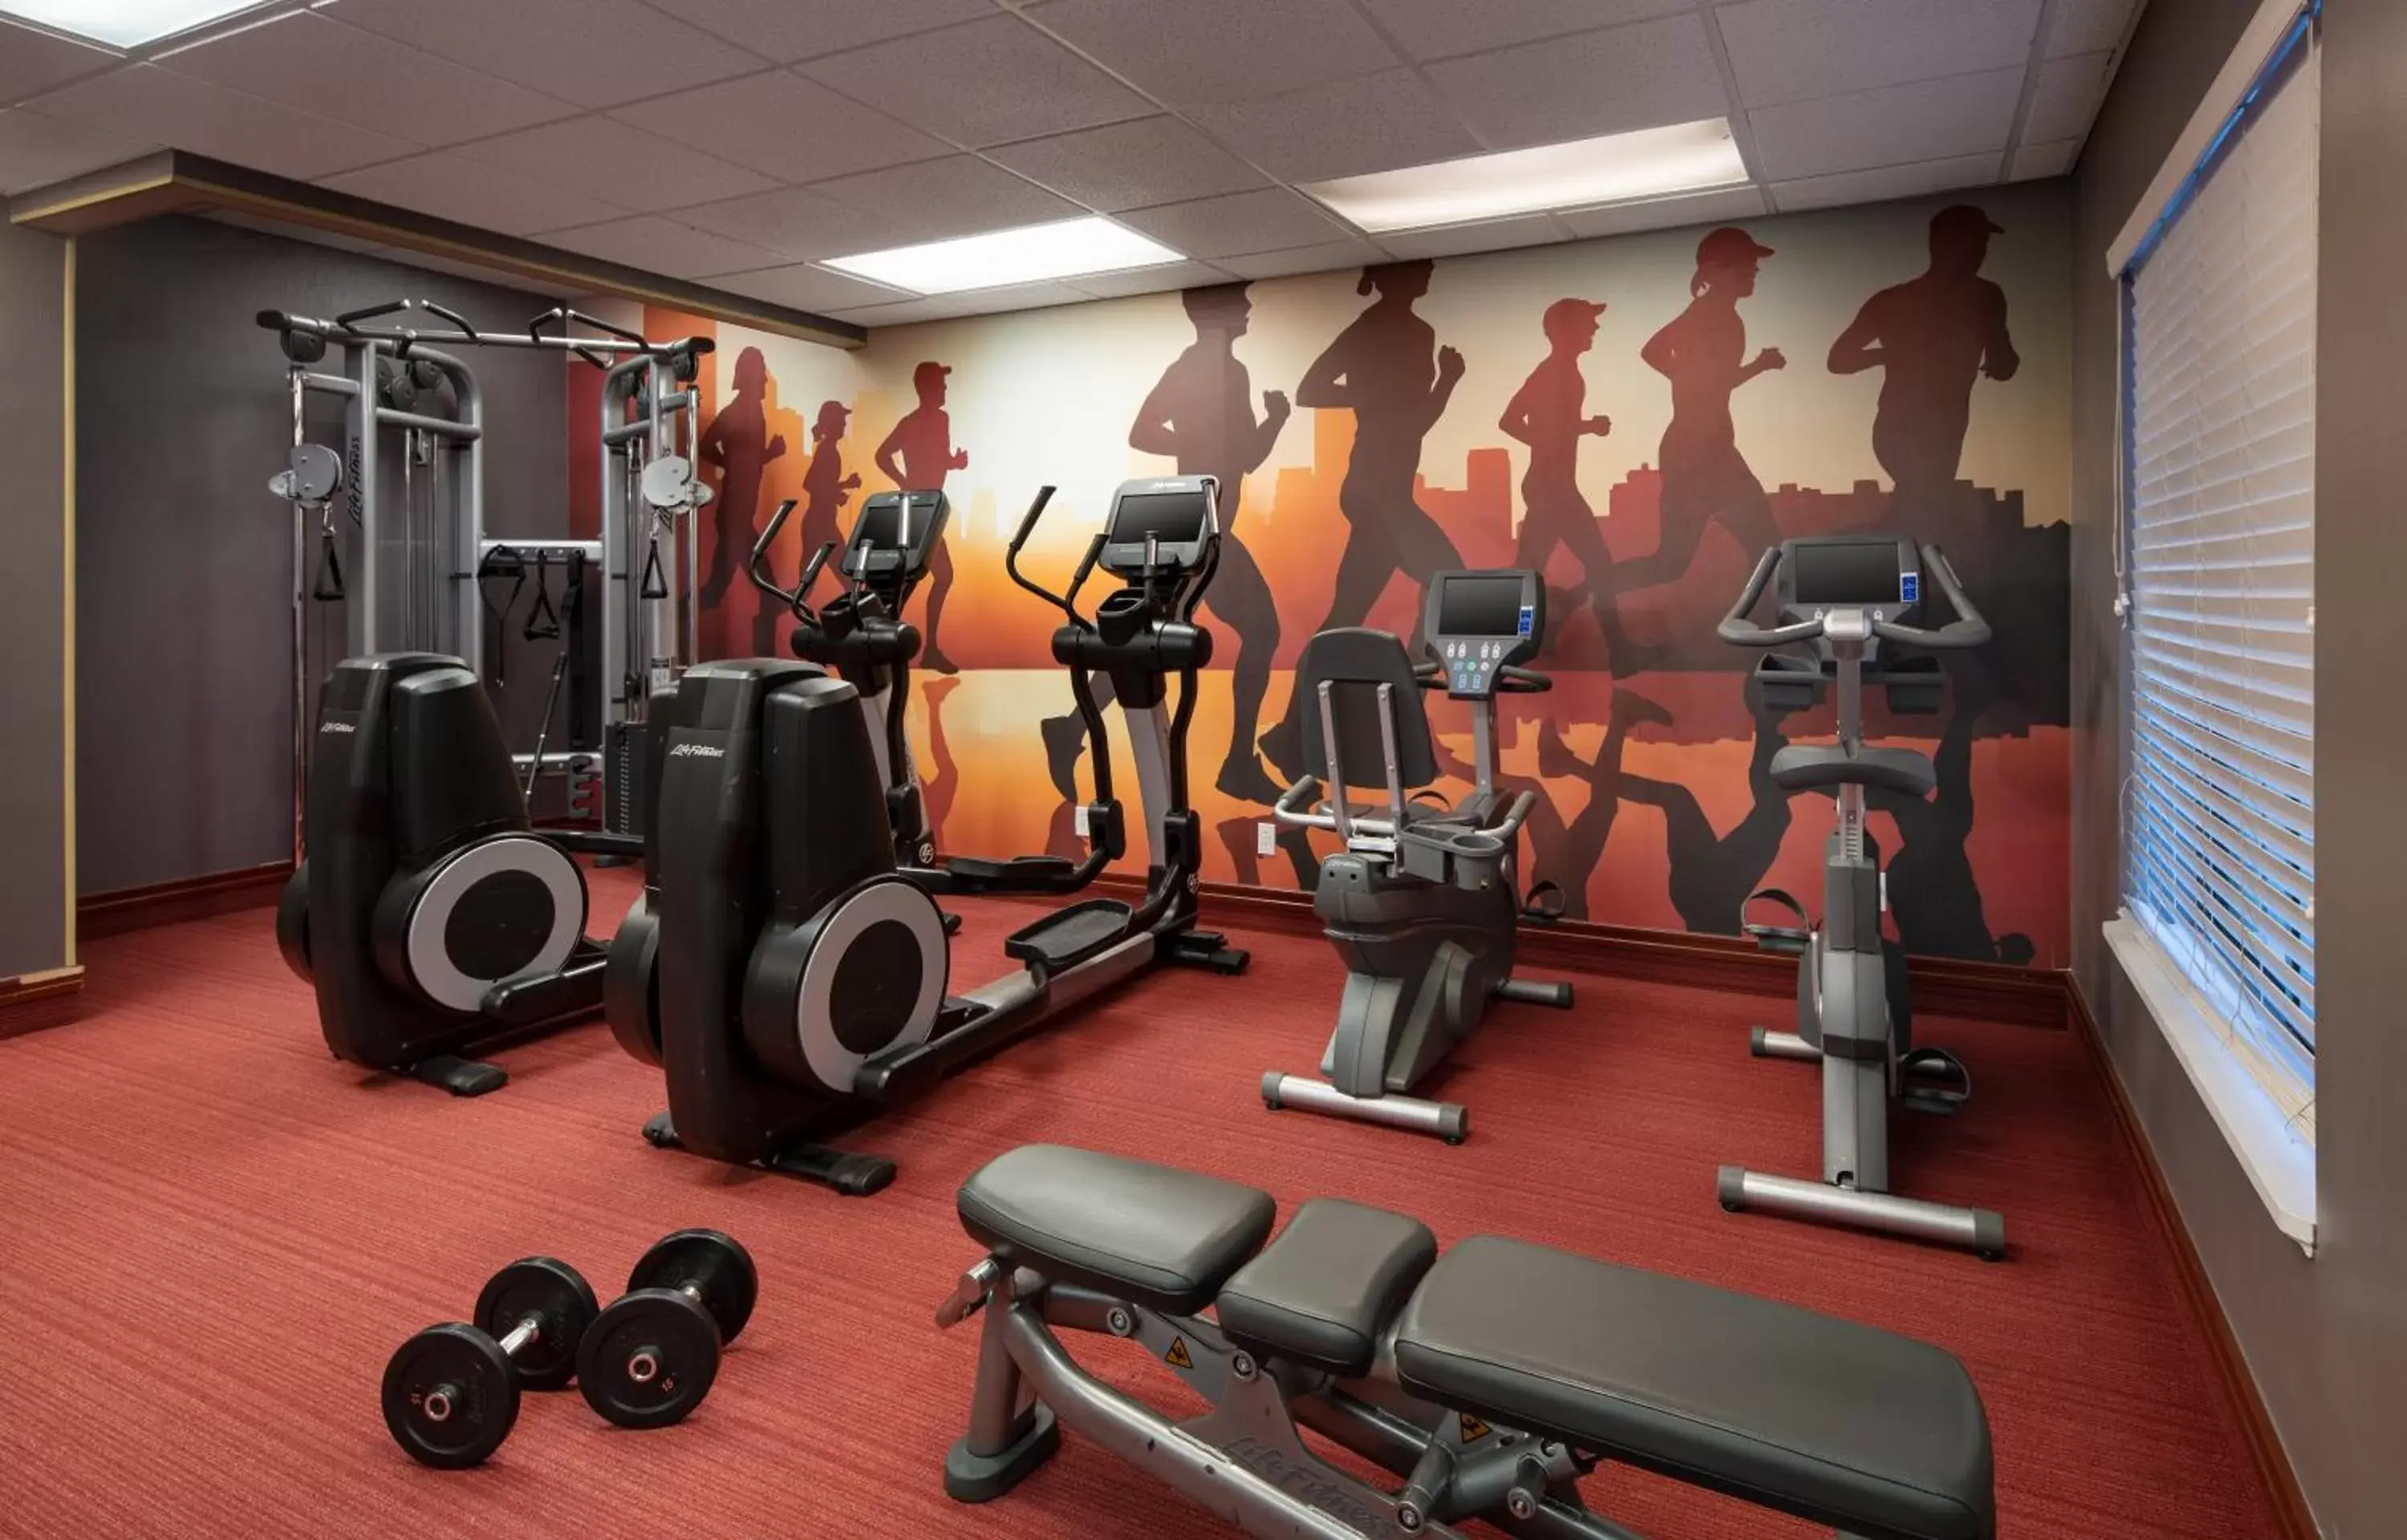 Fitness centre/facilities, Fitness Center/Facilities in Hyatt House Denver Tech Center